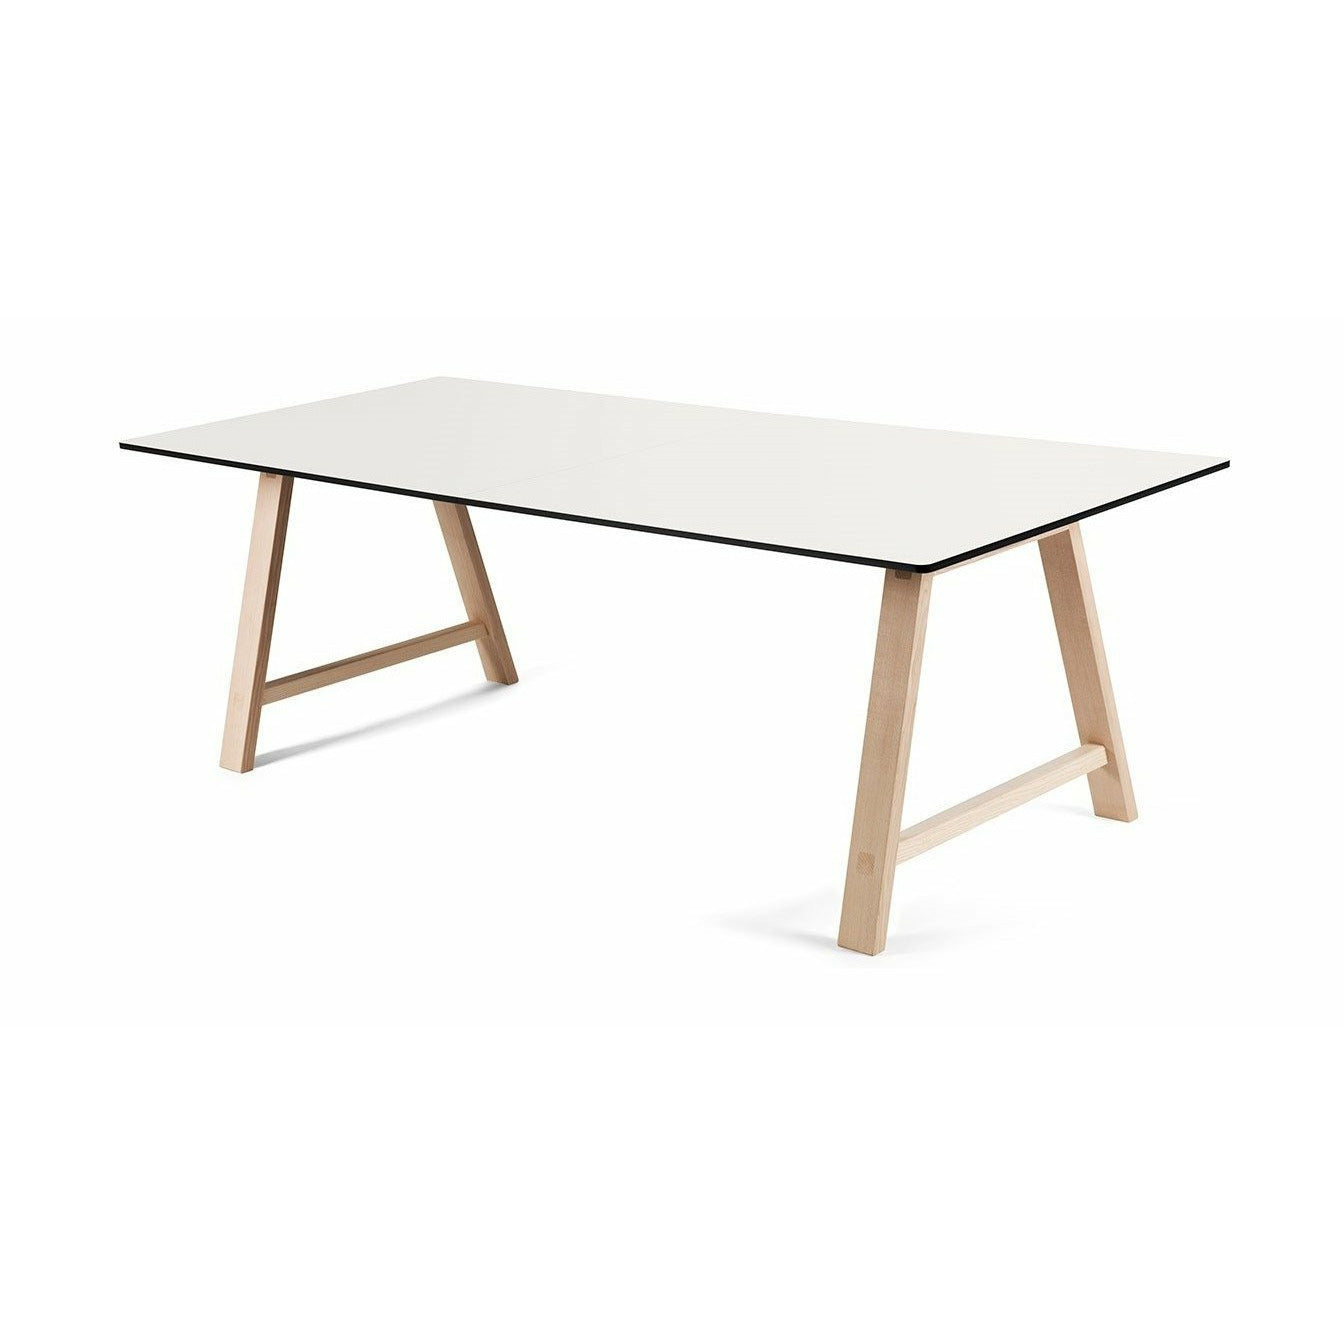 Andersen Furniture T1 udtræksbord, hvid laminat, sæbebehandlet eg, 160 cm